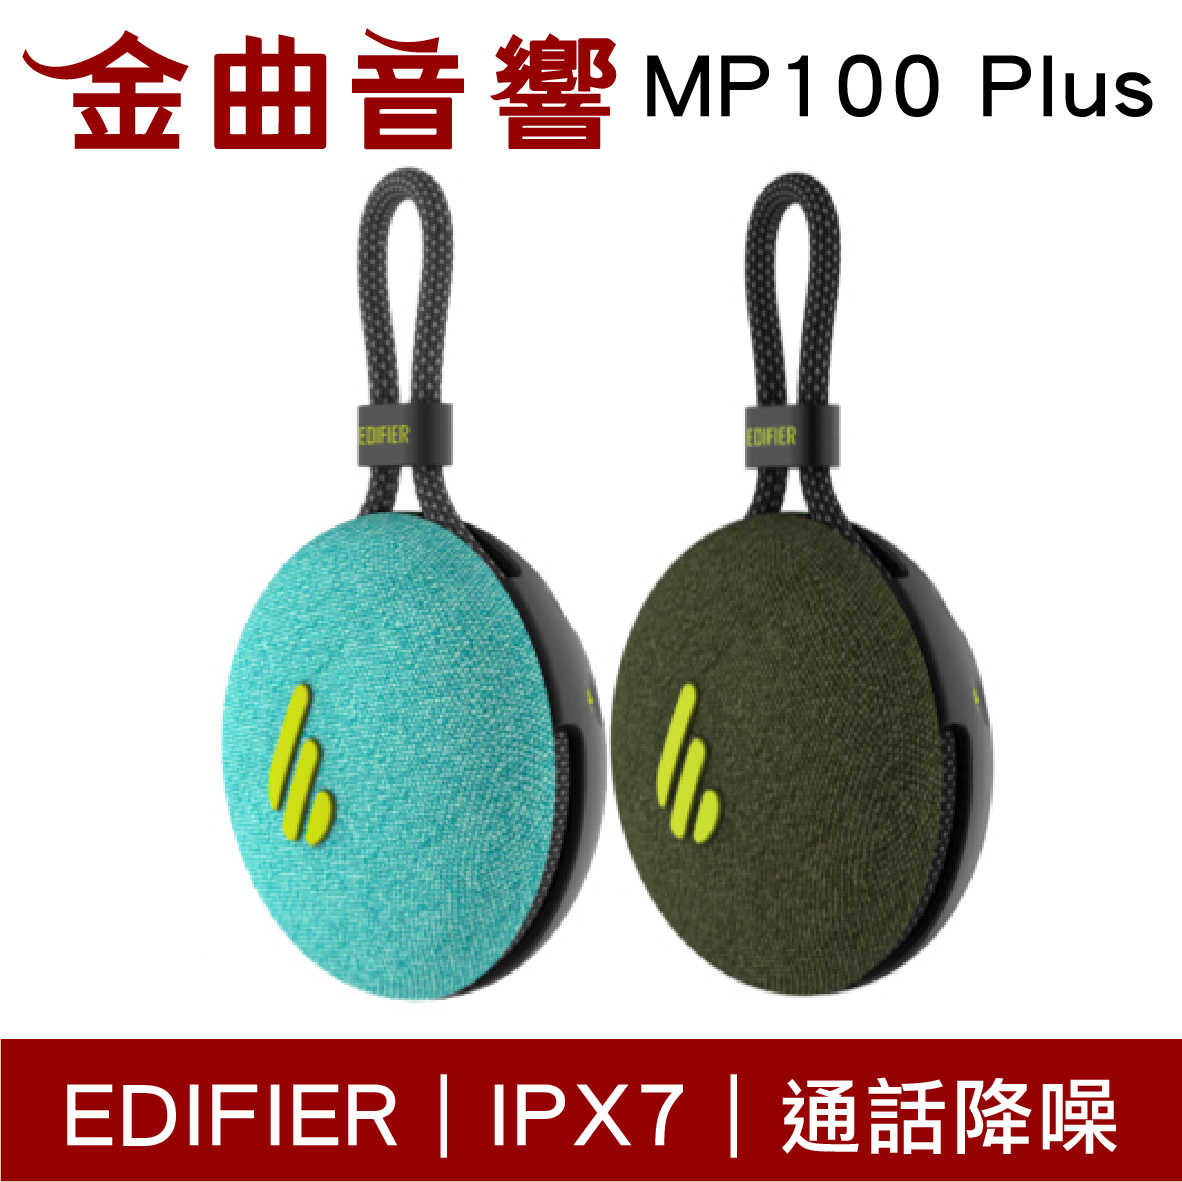 EDIFIER 漫步者 MP100 Plus 防水 IPX7 便攜式 通話降噪 藍芽喇叭 | 金曲音響